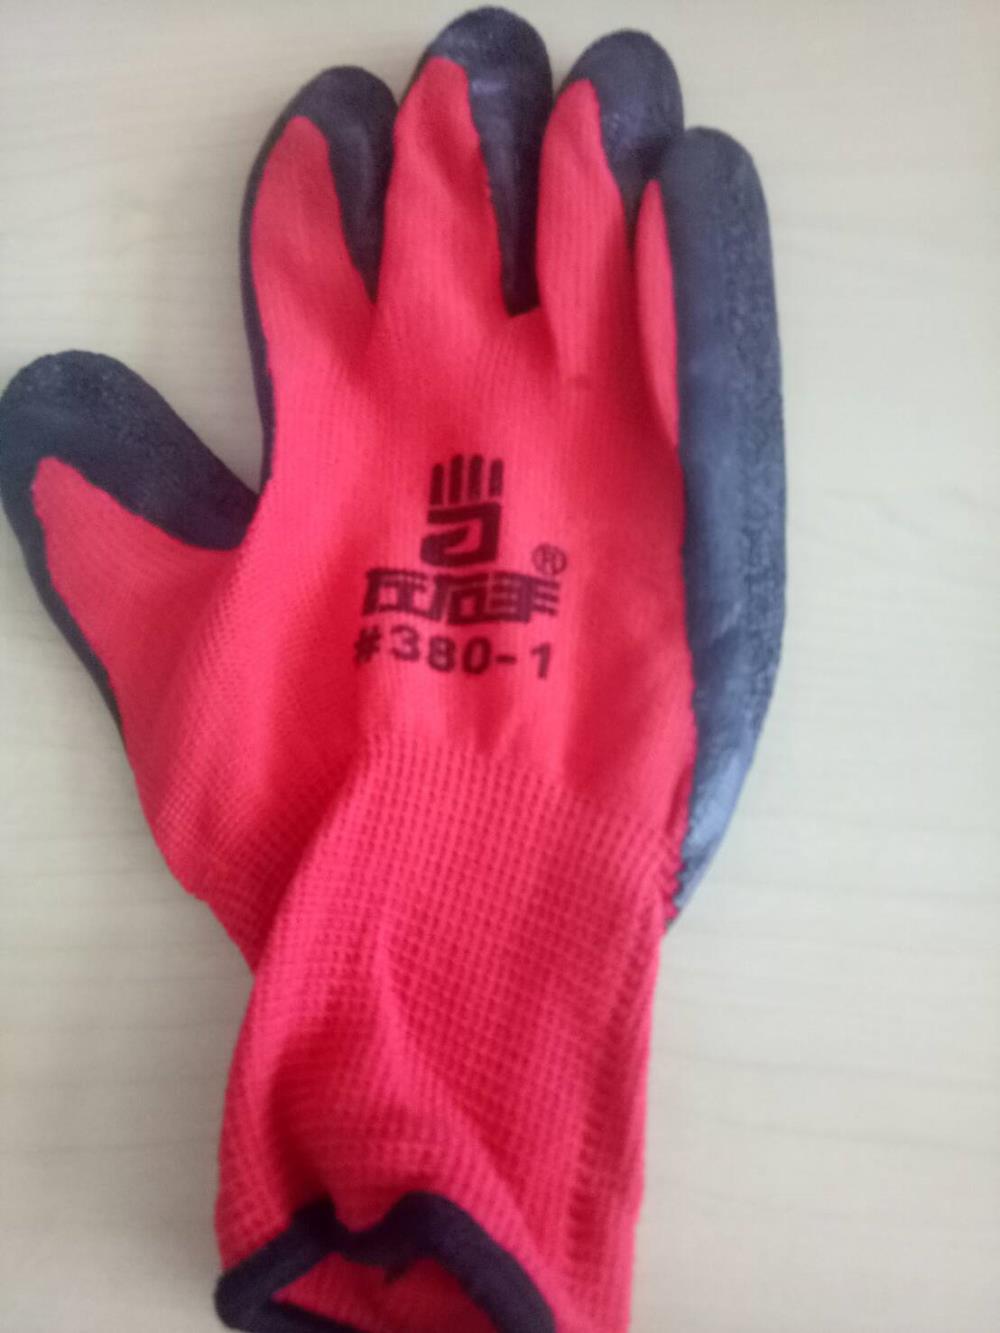 ถุงมือผ้าเคลือบยาง กันบาด กันลื่น สีแดง กับ สีน้ำเงิน,ถุงมือผ้าเคลือบยาง กันบาด กันลื่น,,Plant and Facility Equipment/Safety Equipment/Gloves & Hand Protection